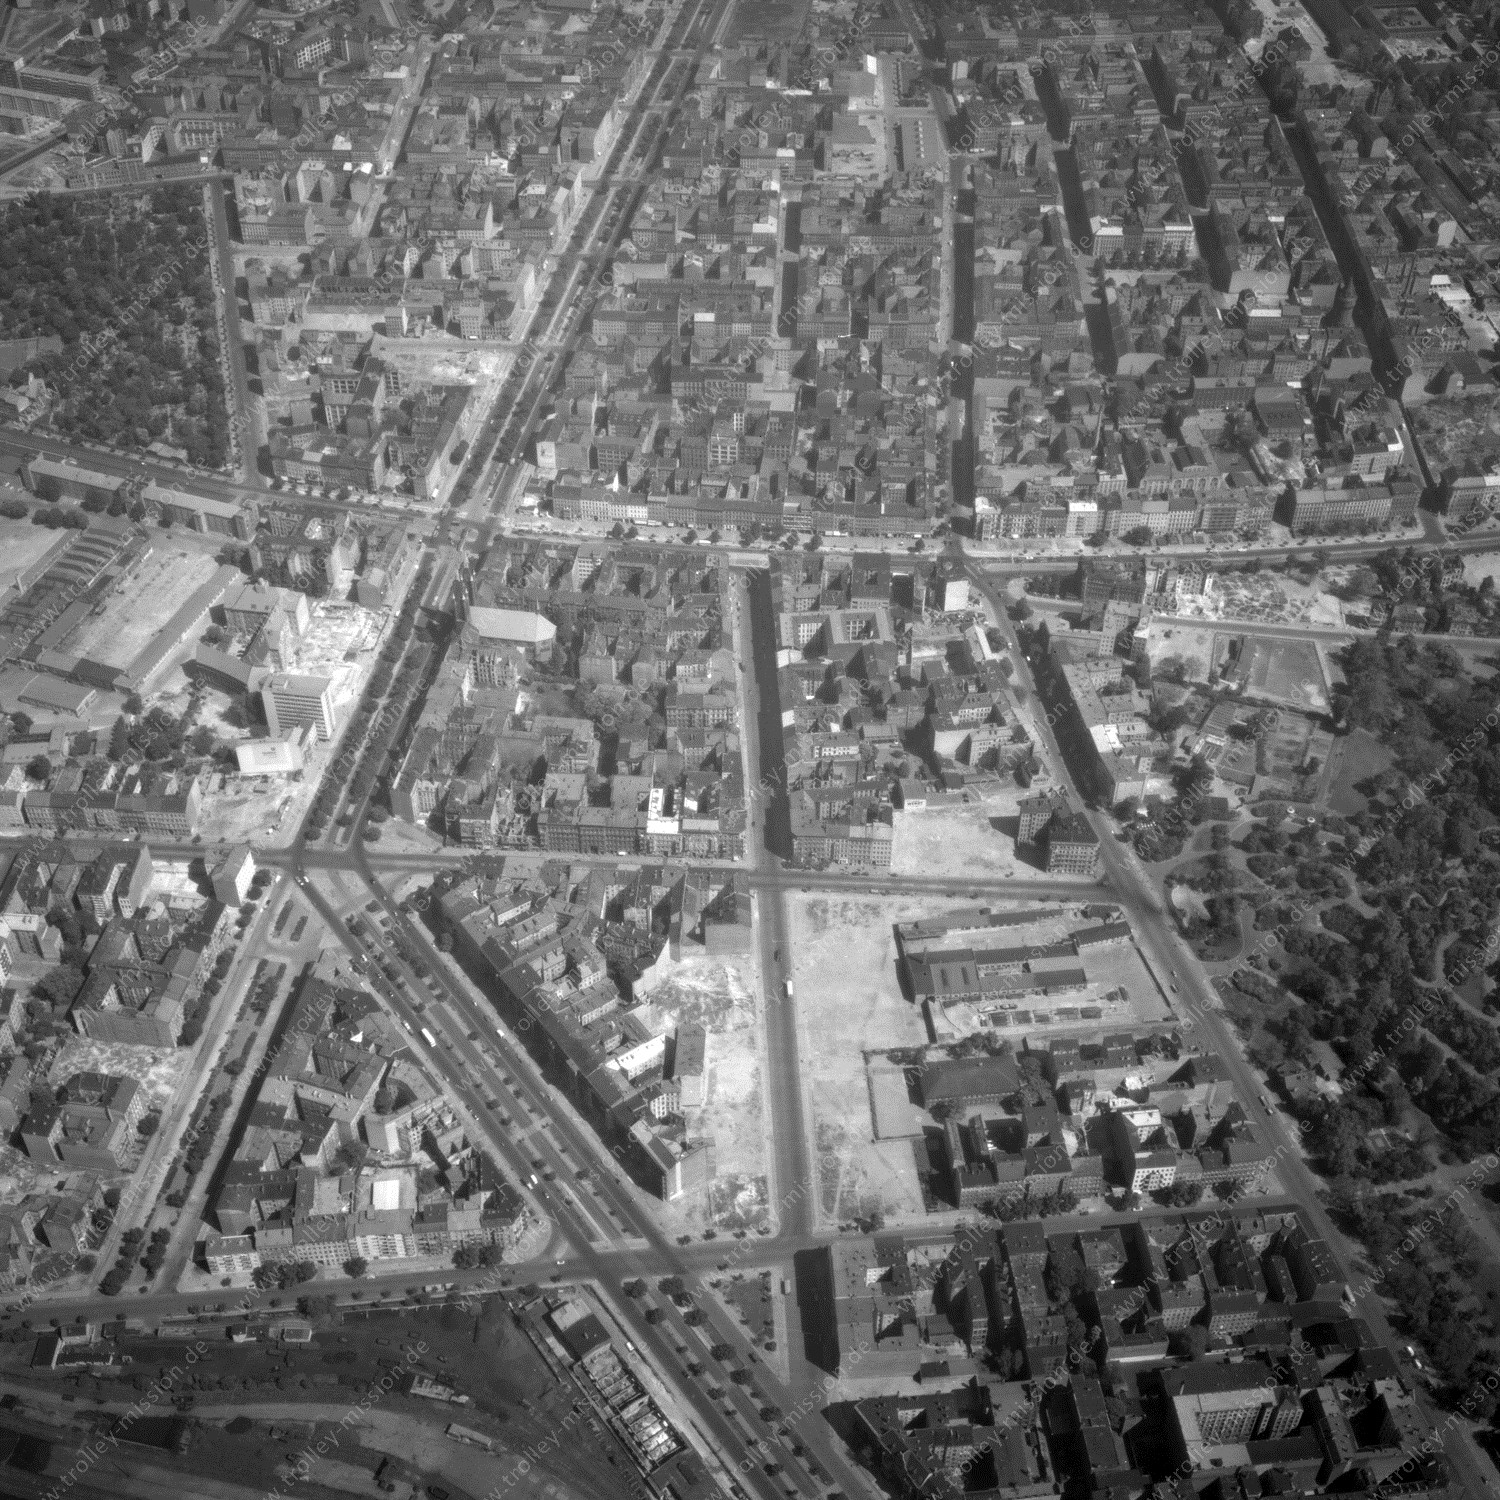 Alte Fotos und Luftbilder von Berlin - Luftbildaufnahme Nr. 03 - Historische Luftaufnahmen von West-Berlin aus dem Jahr 1954 - Flugstrecke India